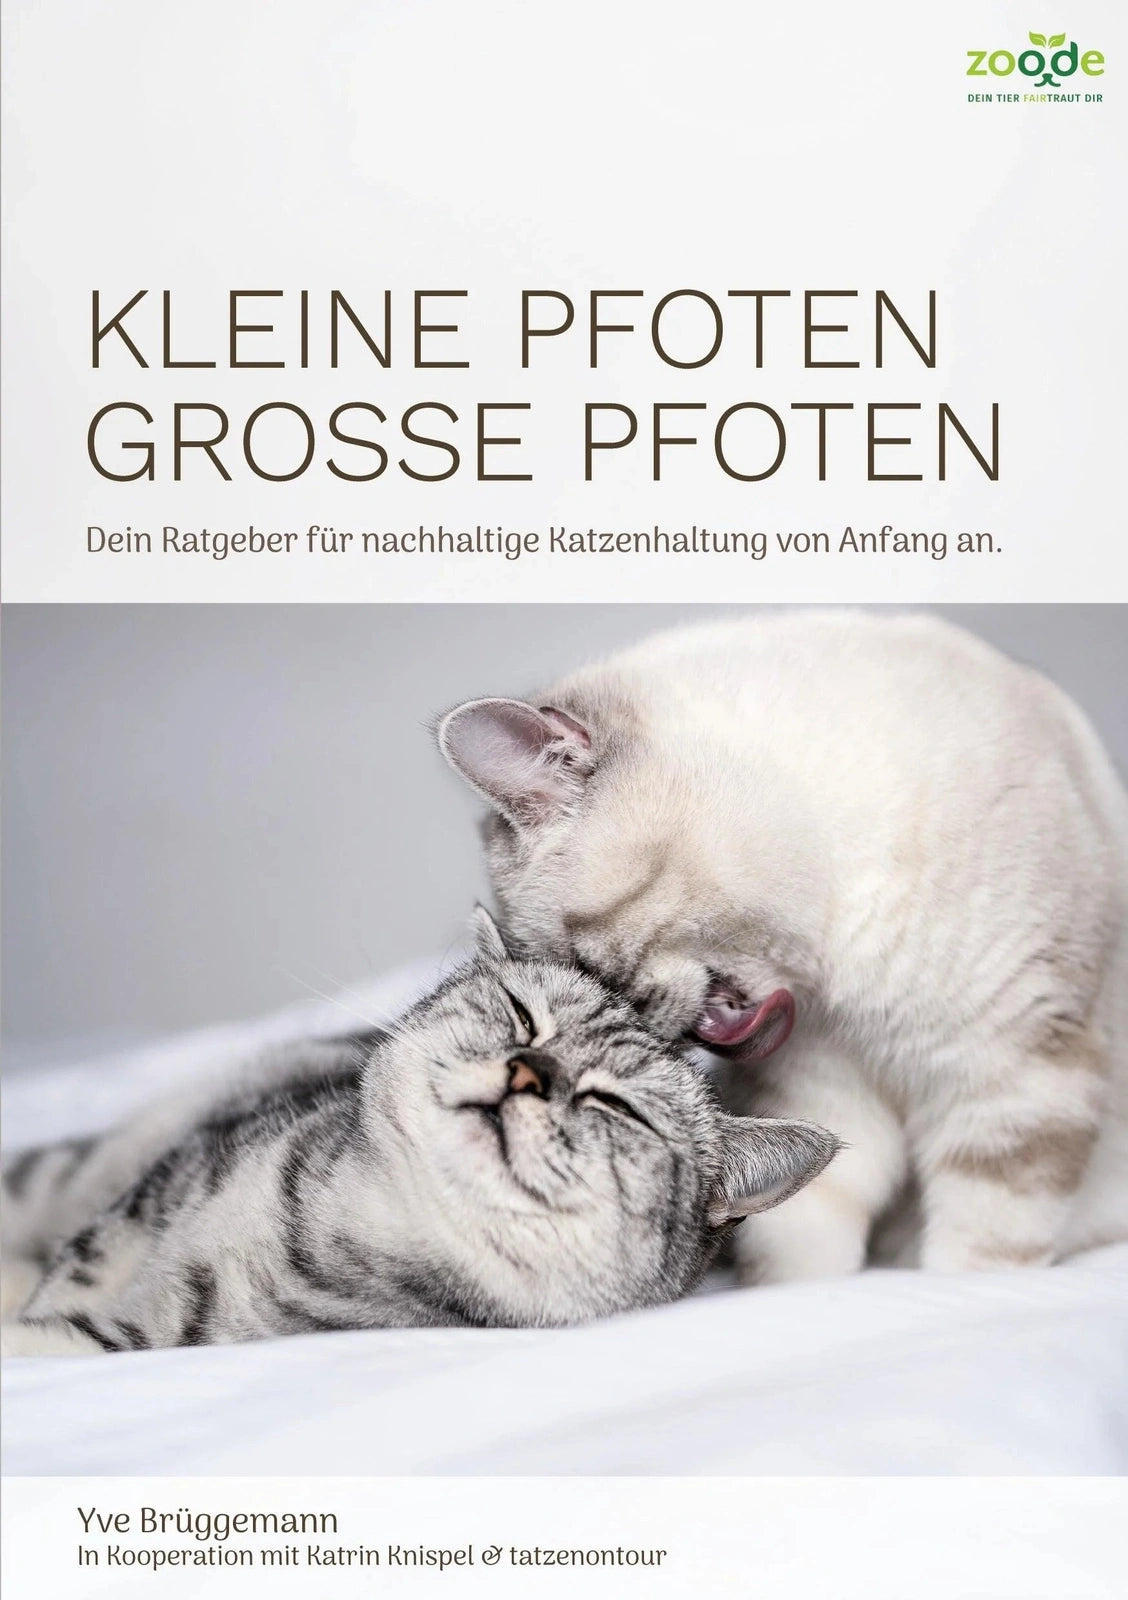 Artikel mit dem Namen Kleine Pfoten, Große Pfoten - Katzenratgeber (Taschenbuch) im Shop von zoo.de , dem Onlineshop für nachhaltiges Hundefutter und Katzenfutter.